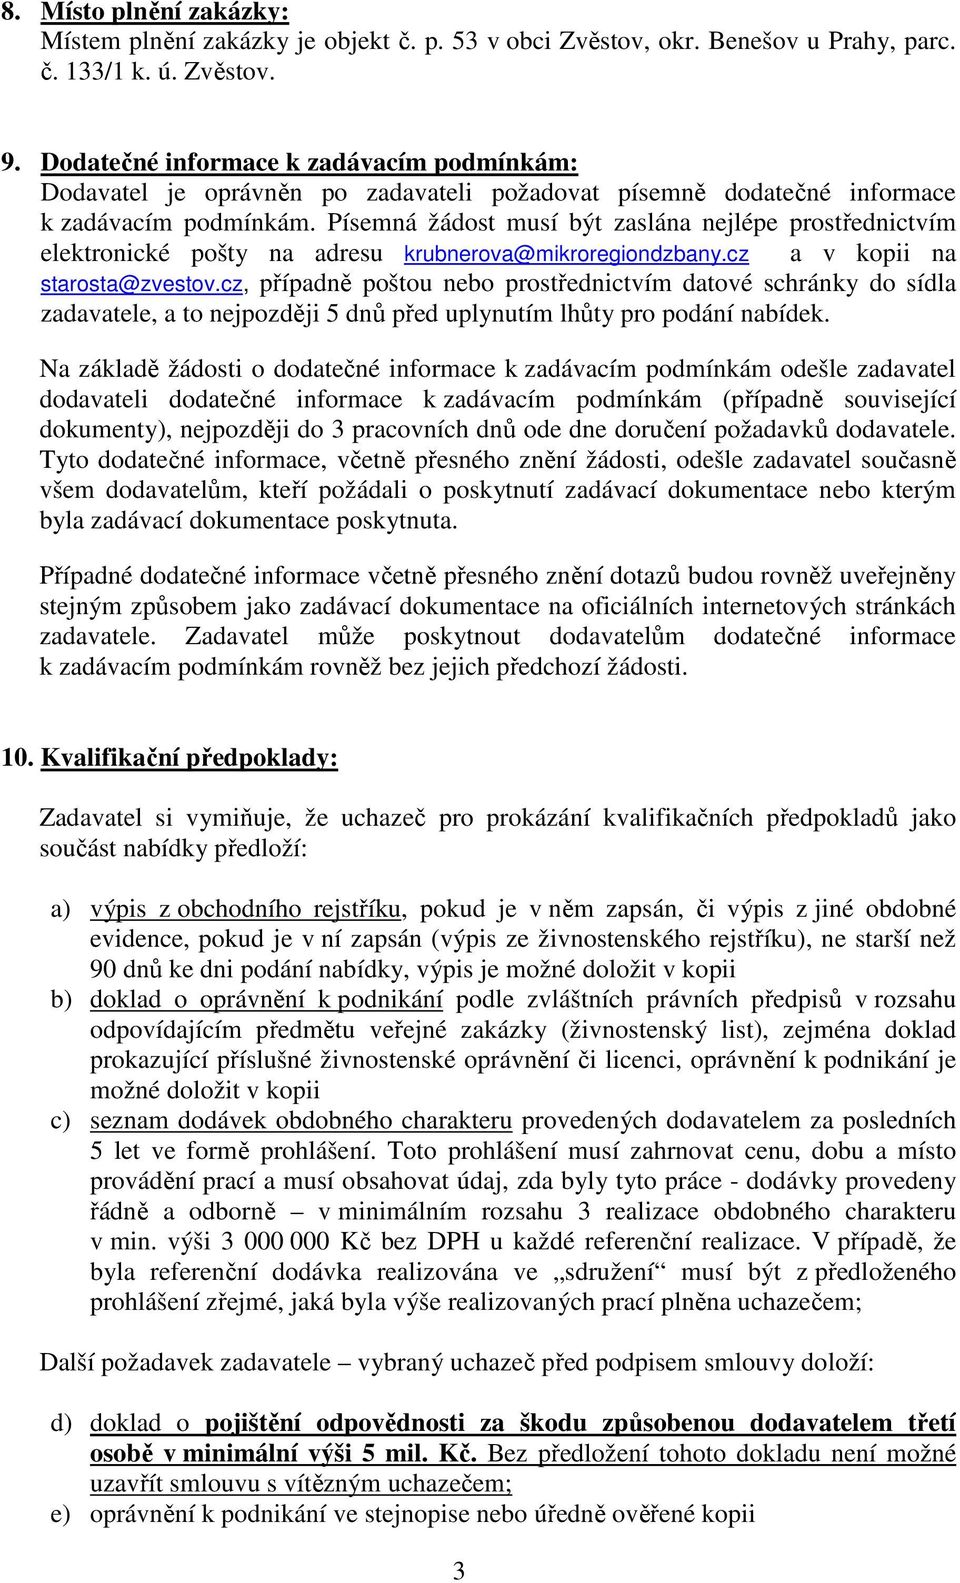 Písemná žádost musí být zaslána nejlépe prostřednictvím elektronické pošty na adresu krubnerova@mikroregiondzbany.cz a v kopii na starosta@zvestov.